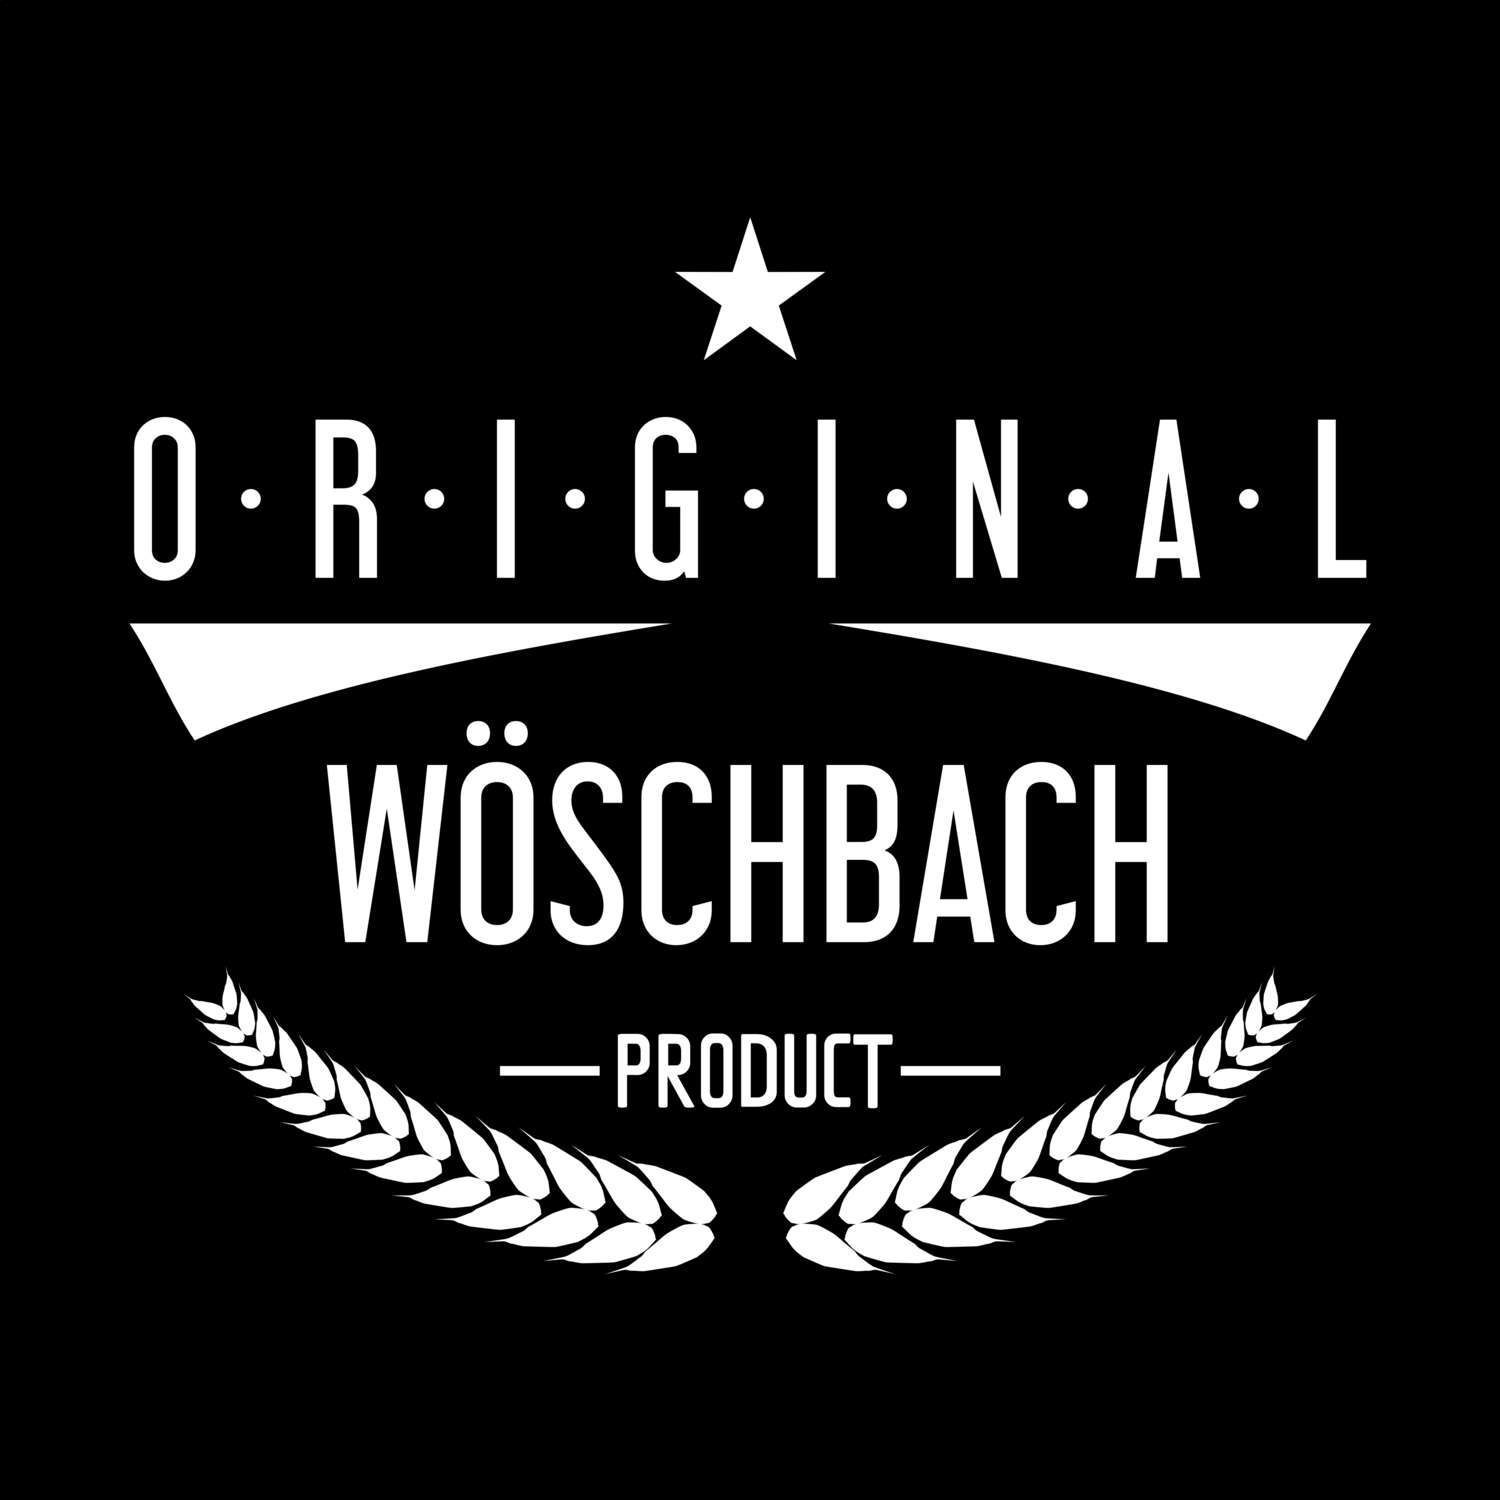 Wöschbach T-Shirt »Original Product«